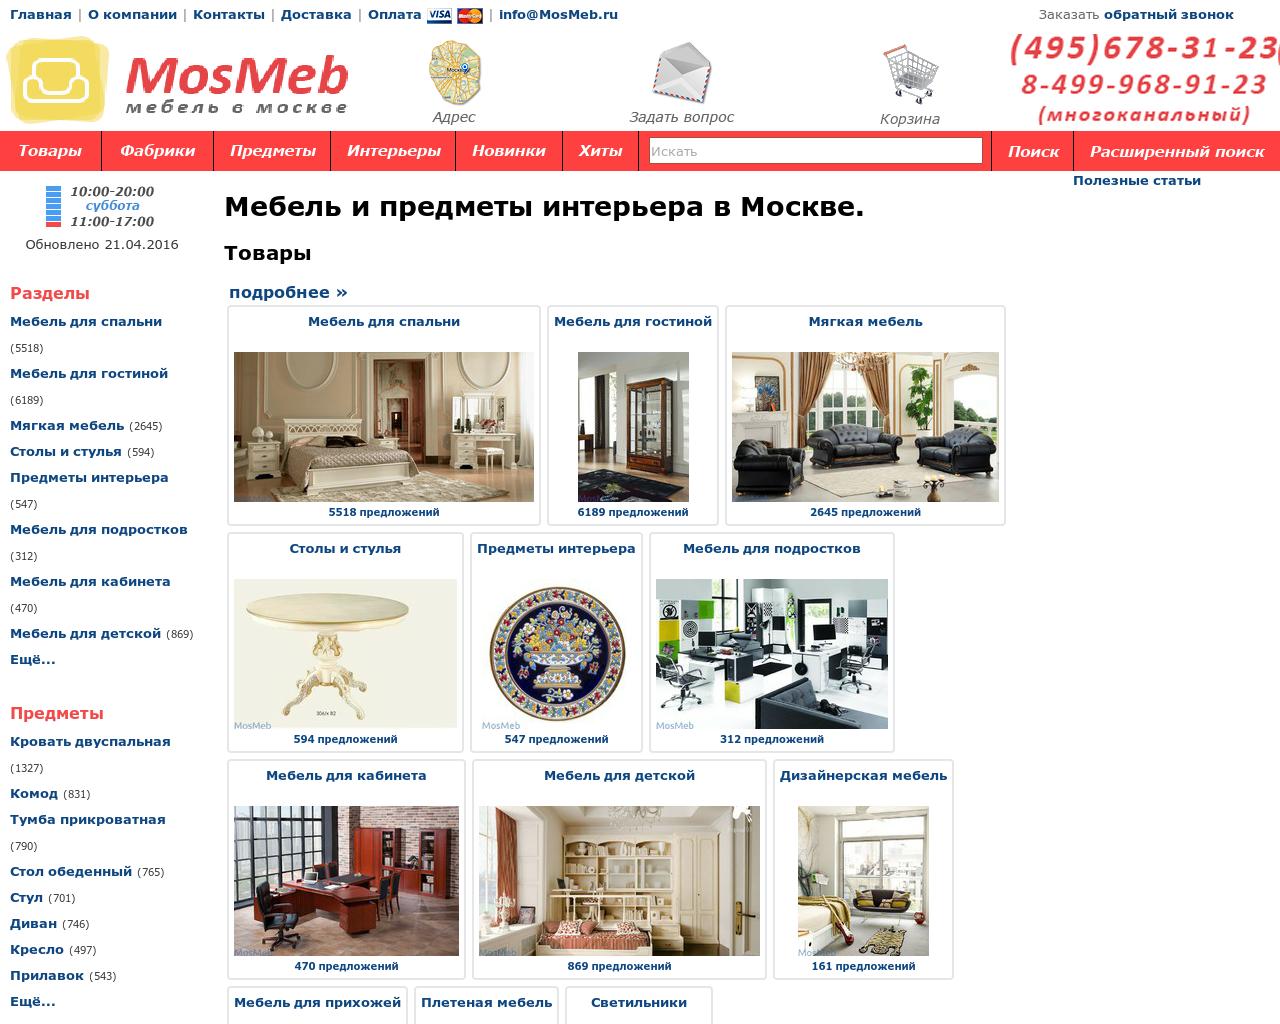 Изображение сайта mosmeb.ru в разрешении 1280x1024